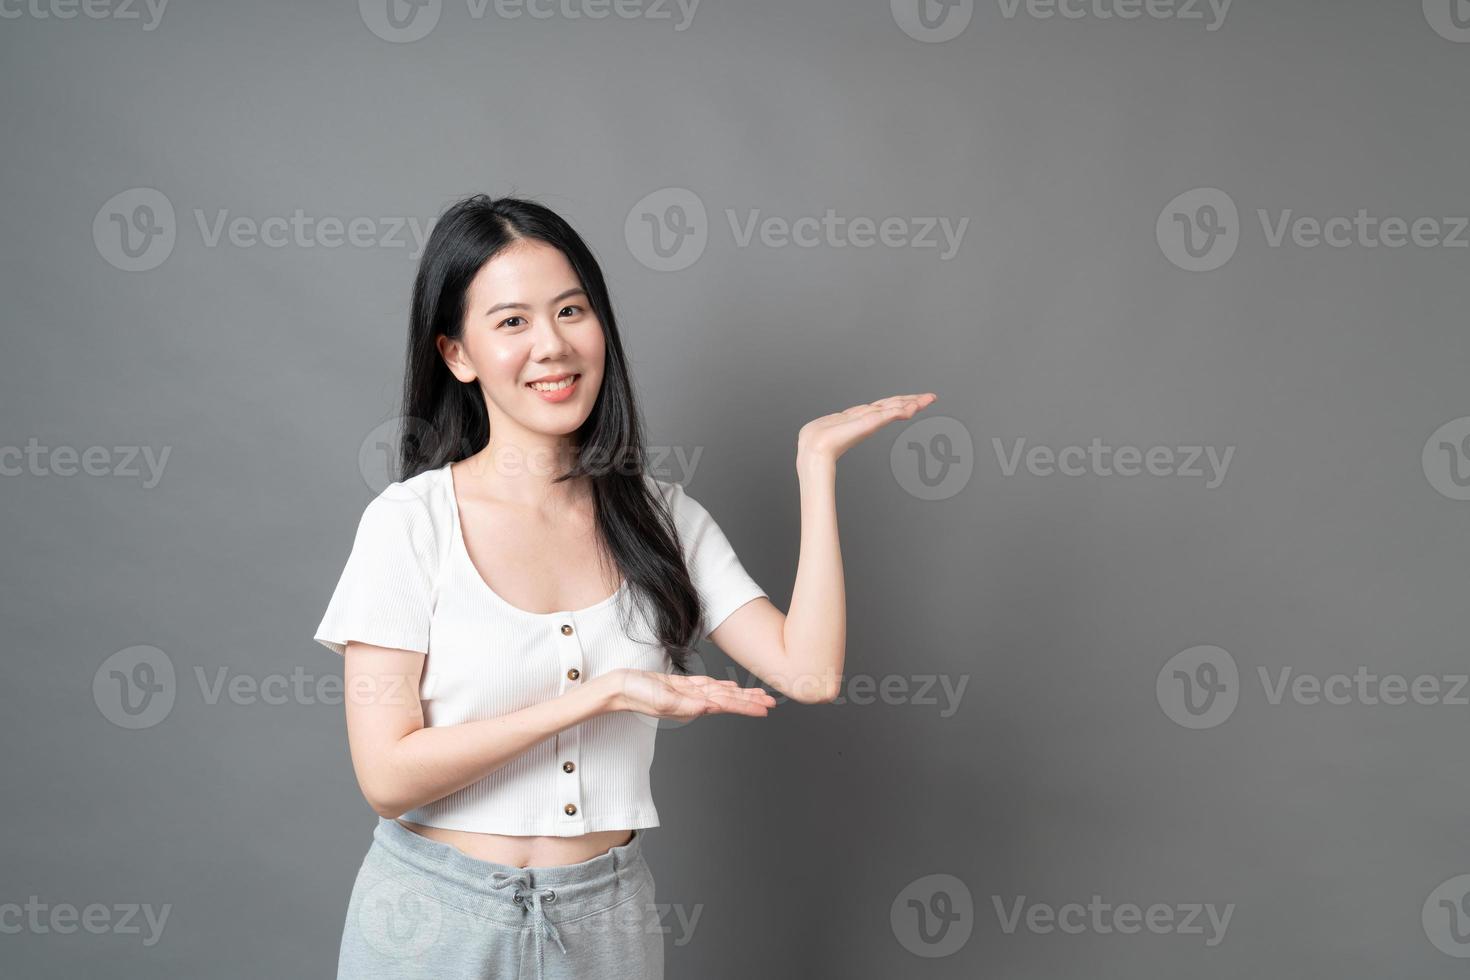 donna asiatica con la faccia sorridente e la mano che si presenta sul lato foto